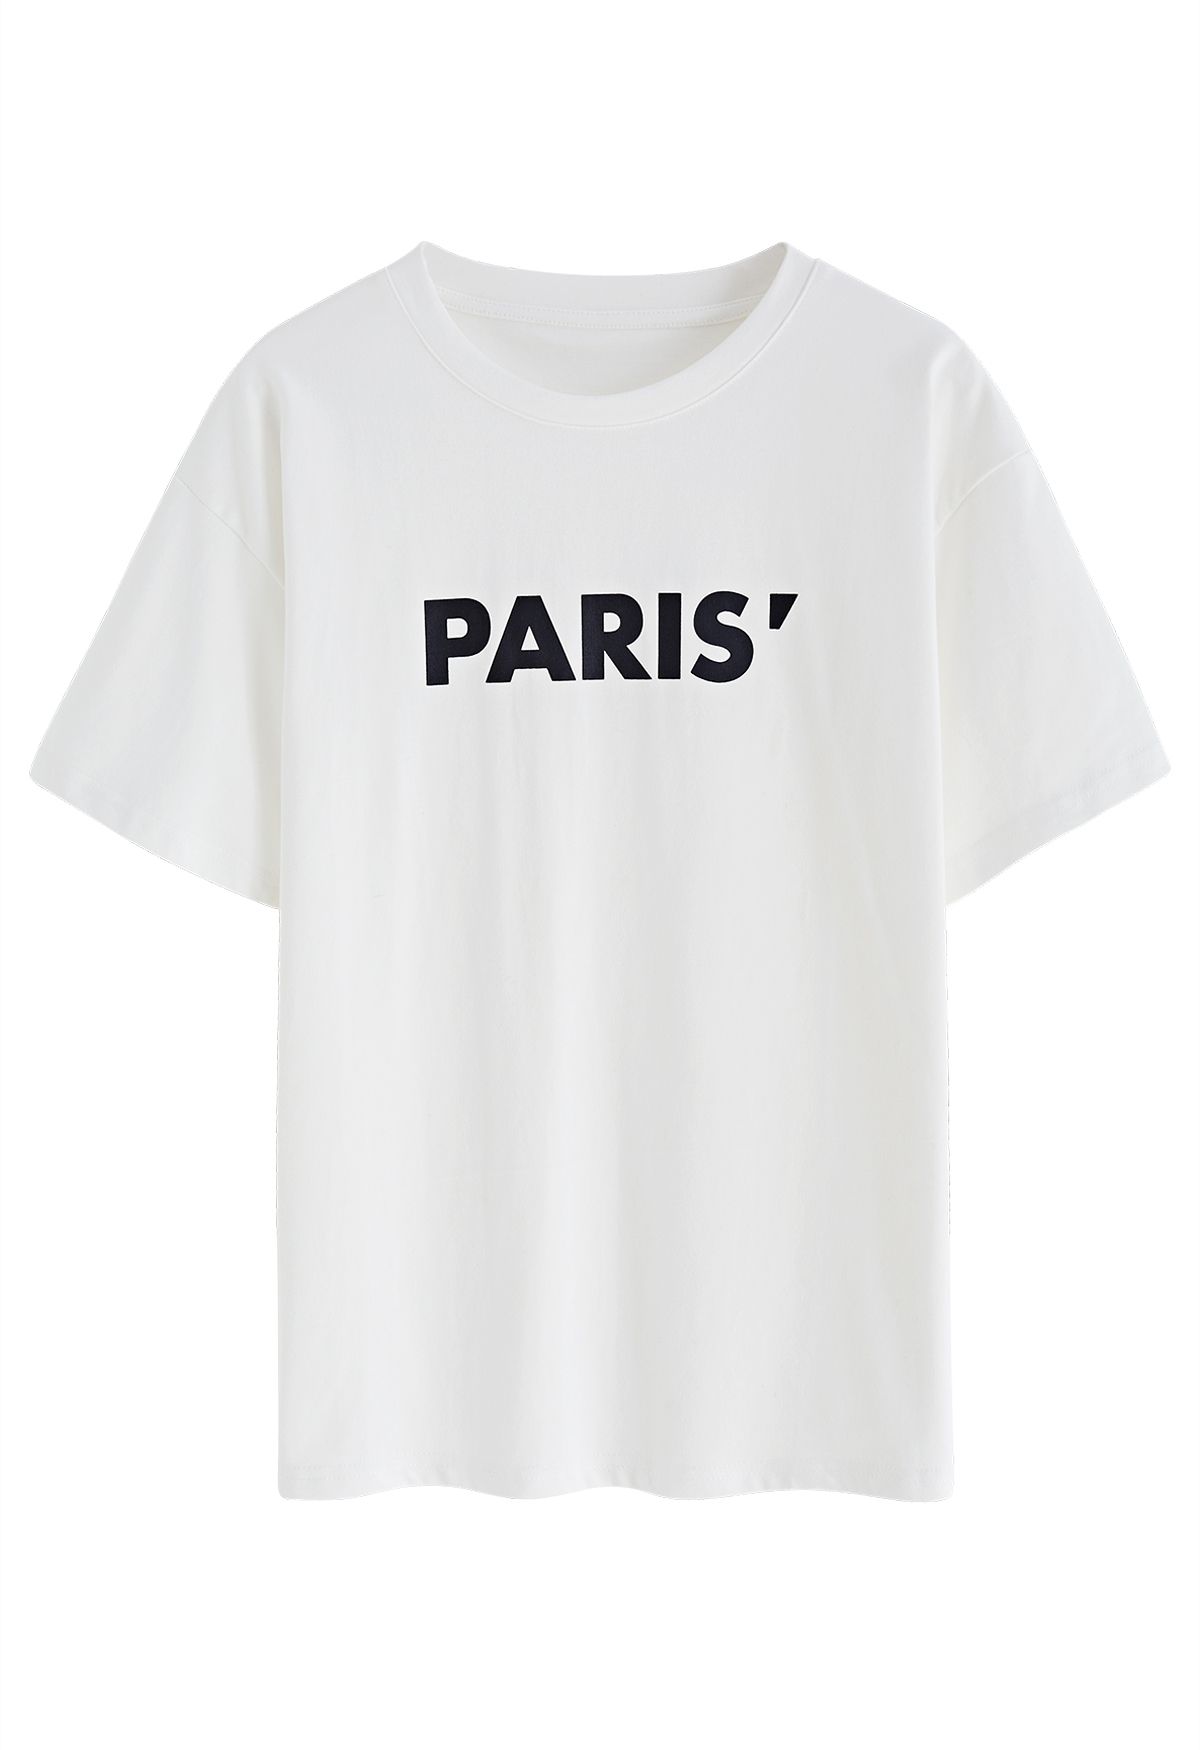 تي شيرت بياقة مستديرة وطبعة باريس باللون الأبيض